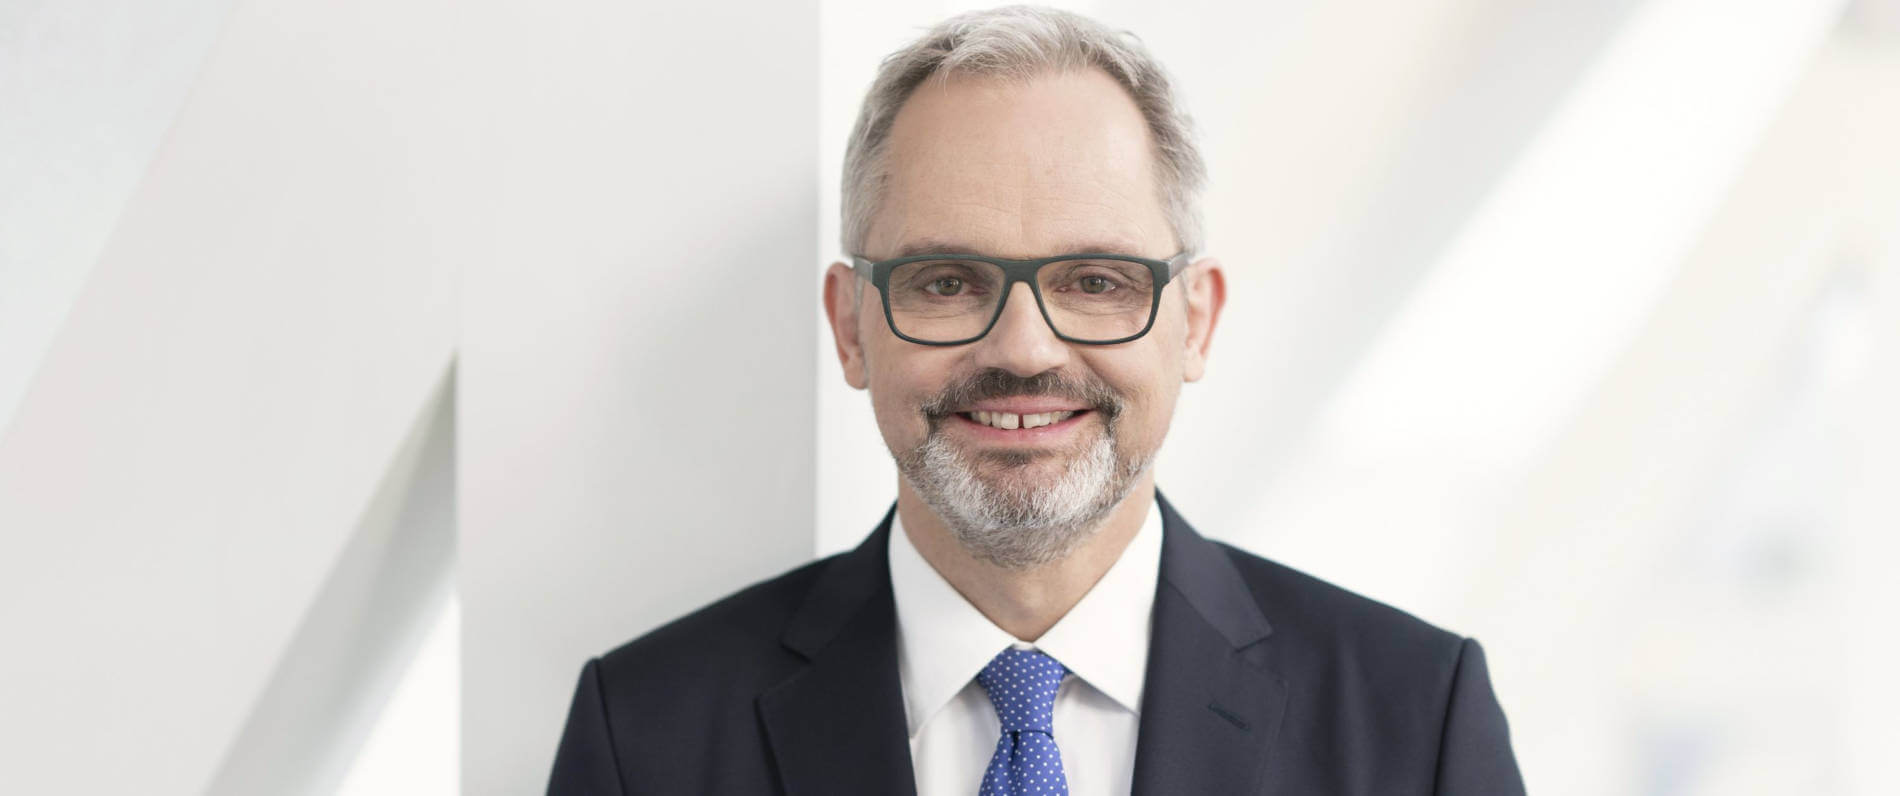 Henrik Thomsen übernimmt Vorstandsposten bei QUARTERBACK